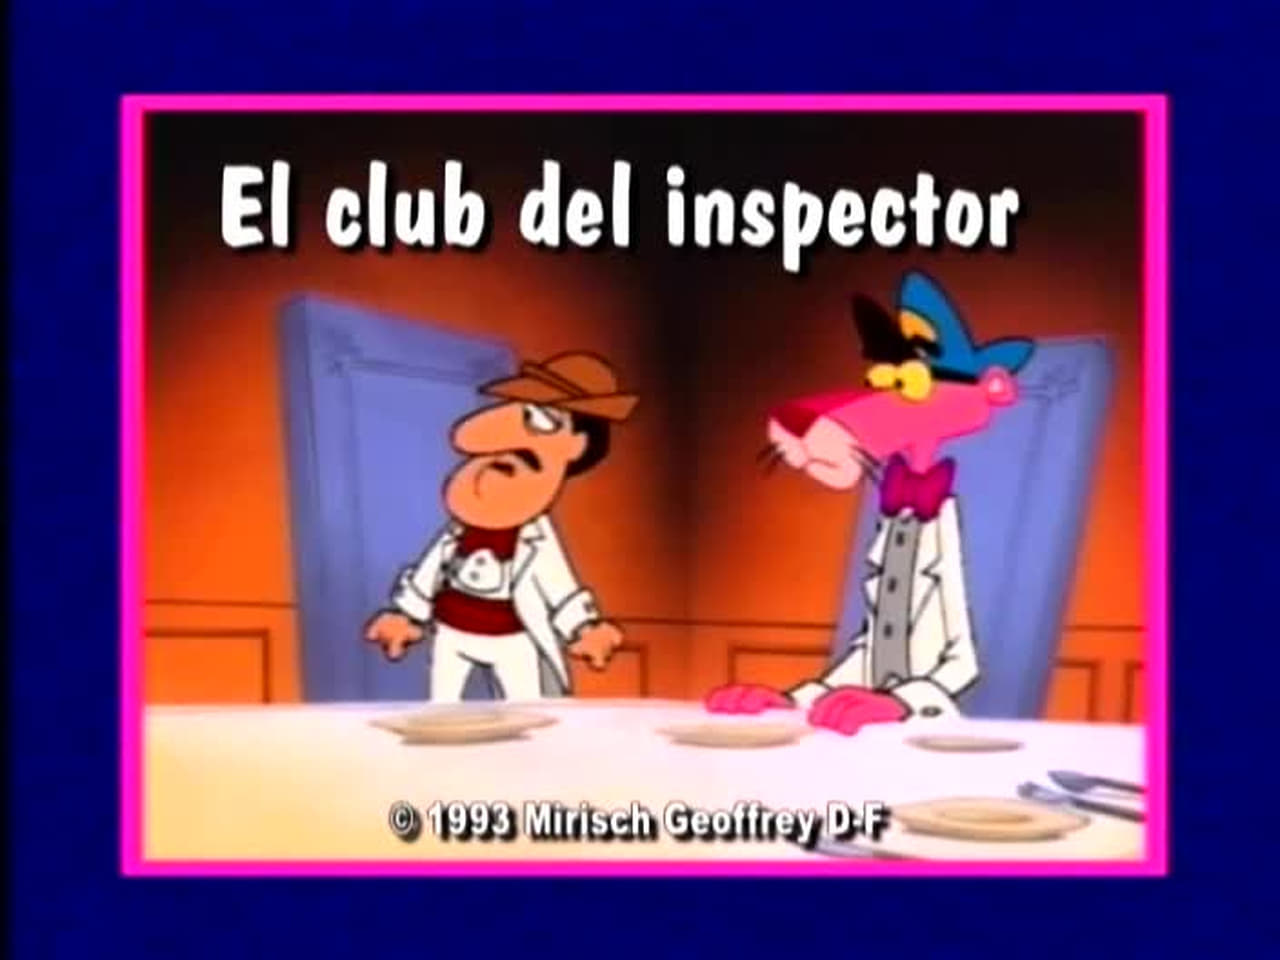 The Inspectors Club